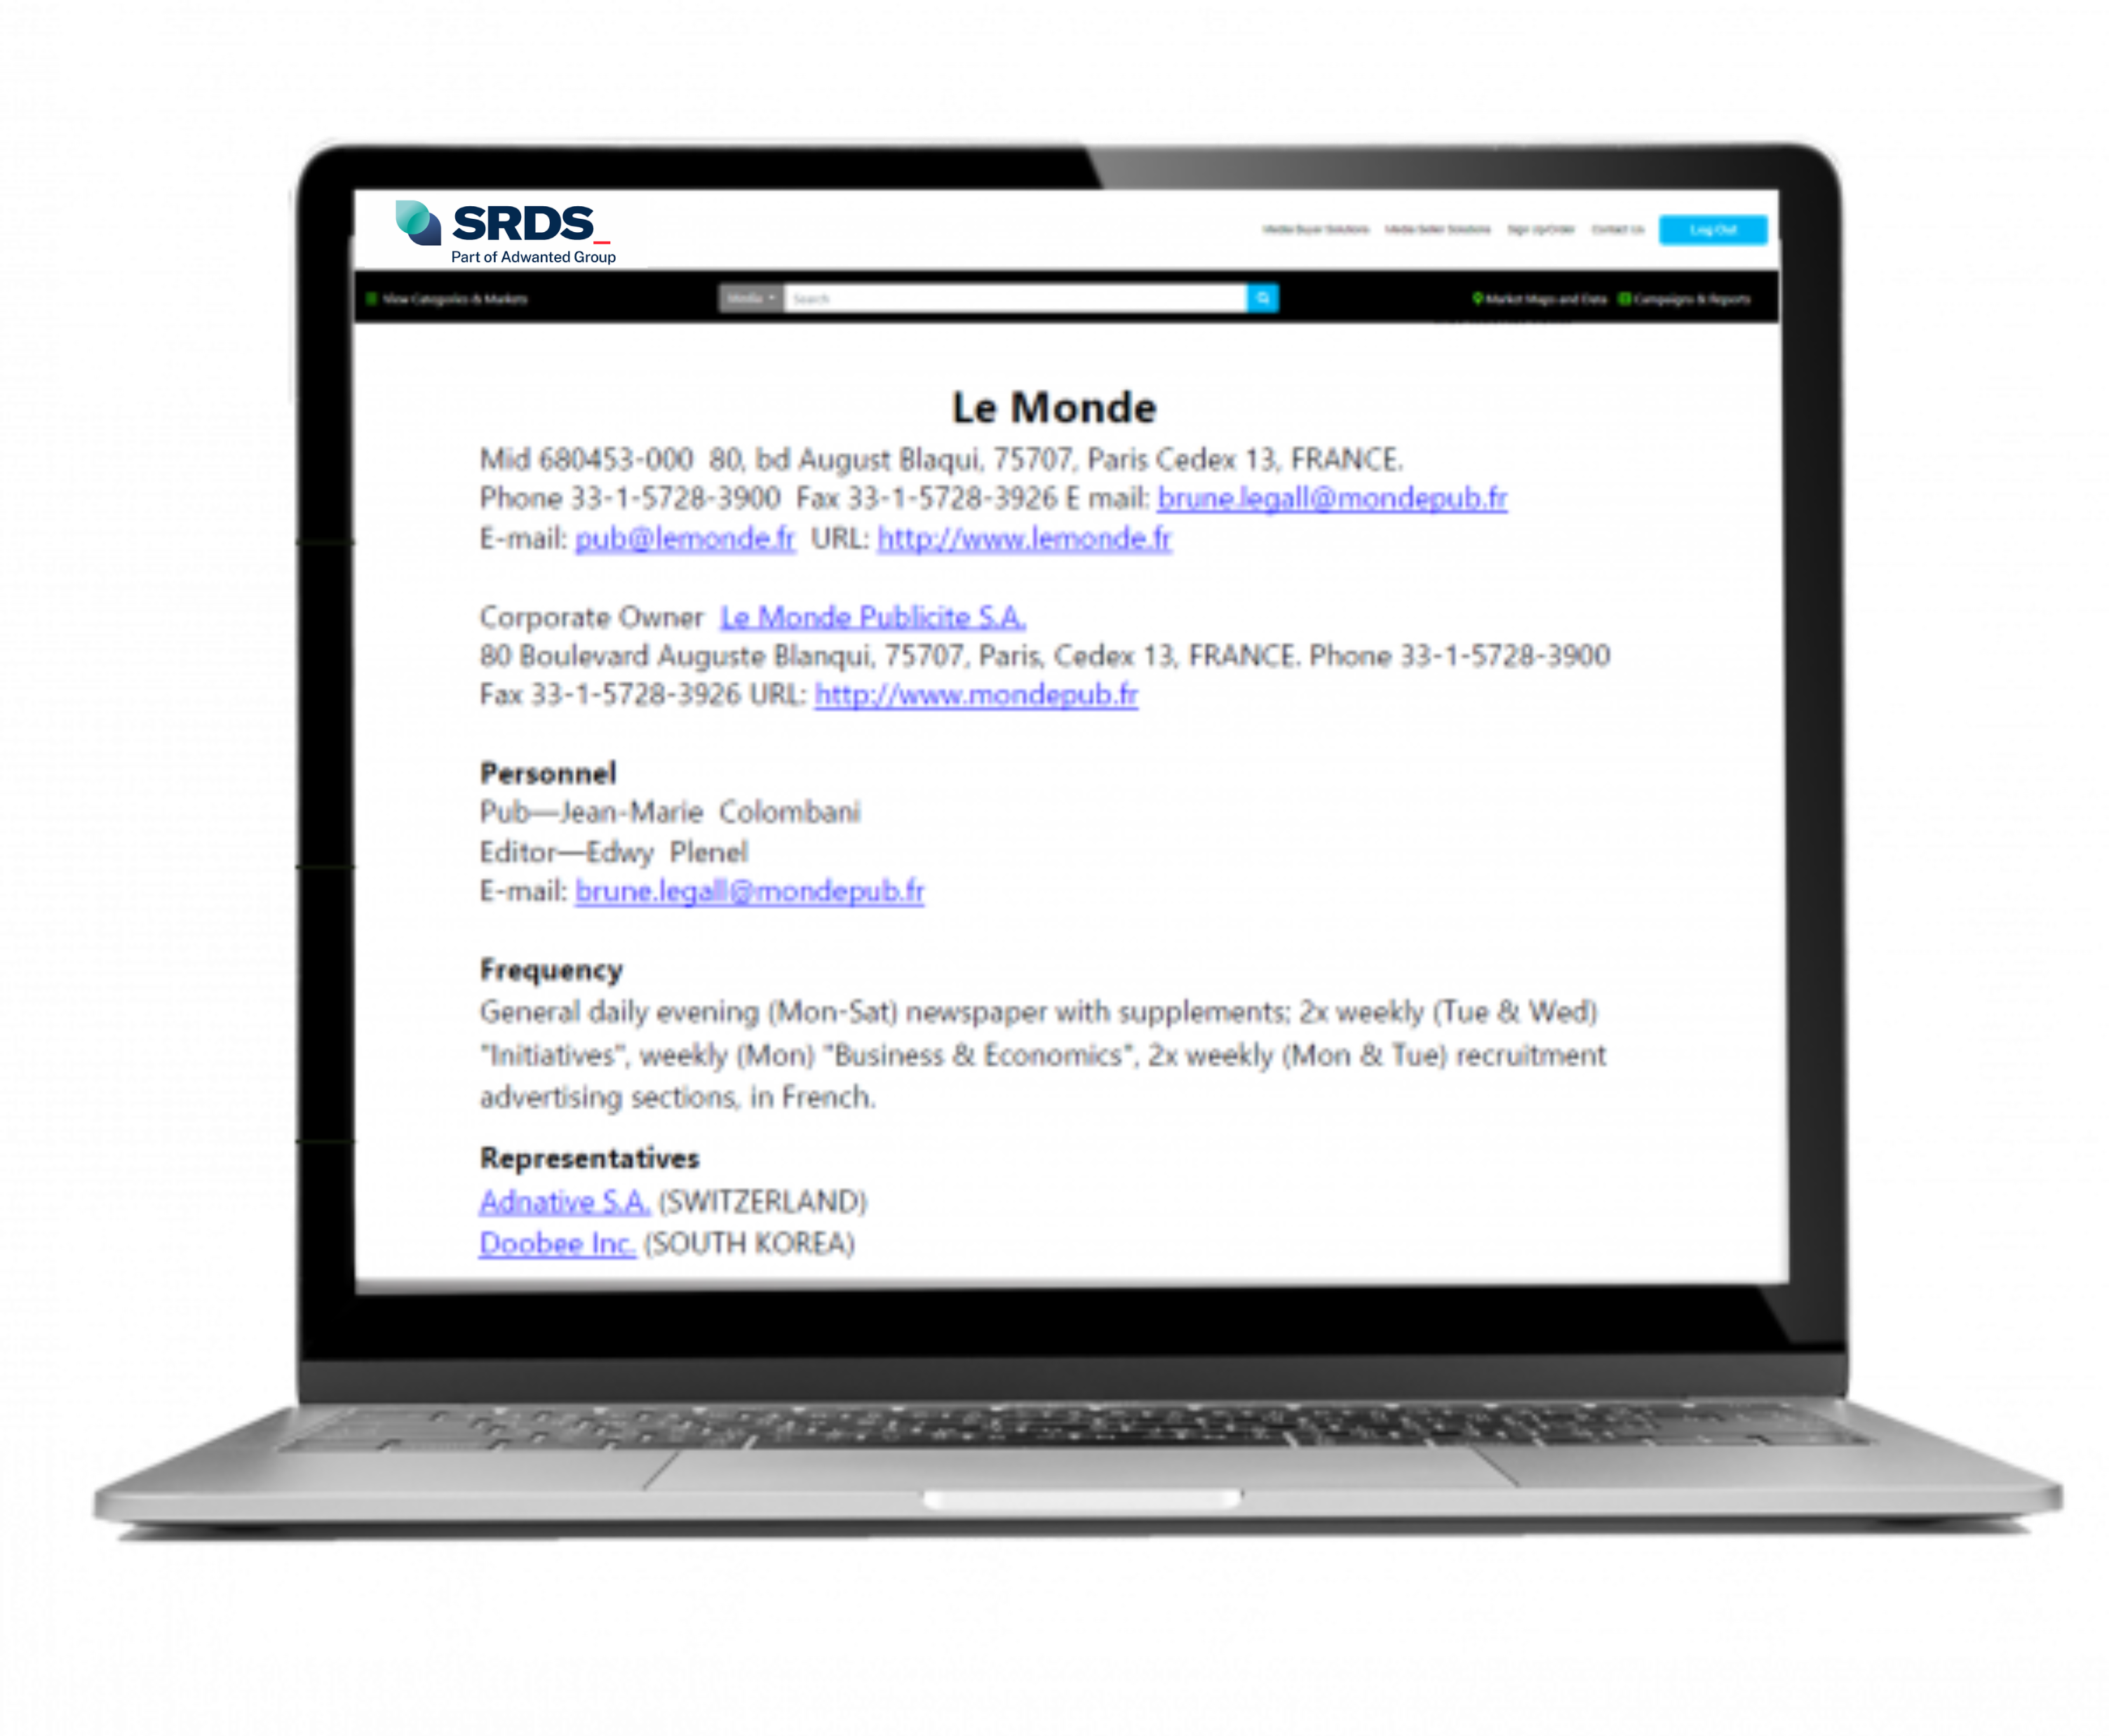 Laptop showing Le Monde site page